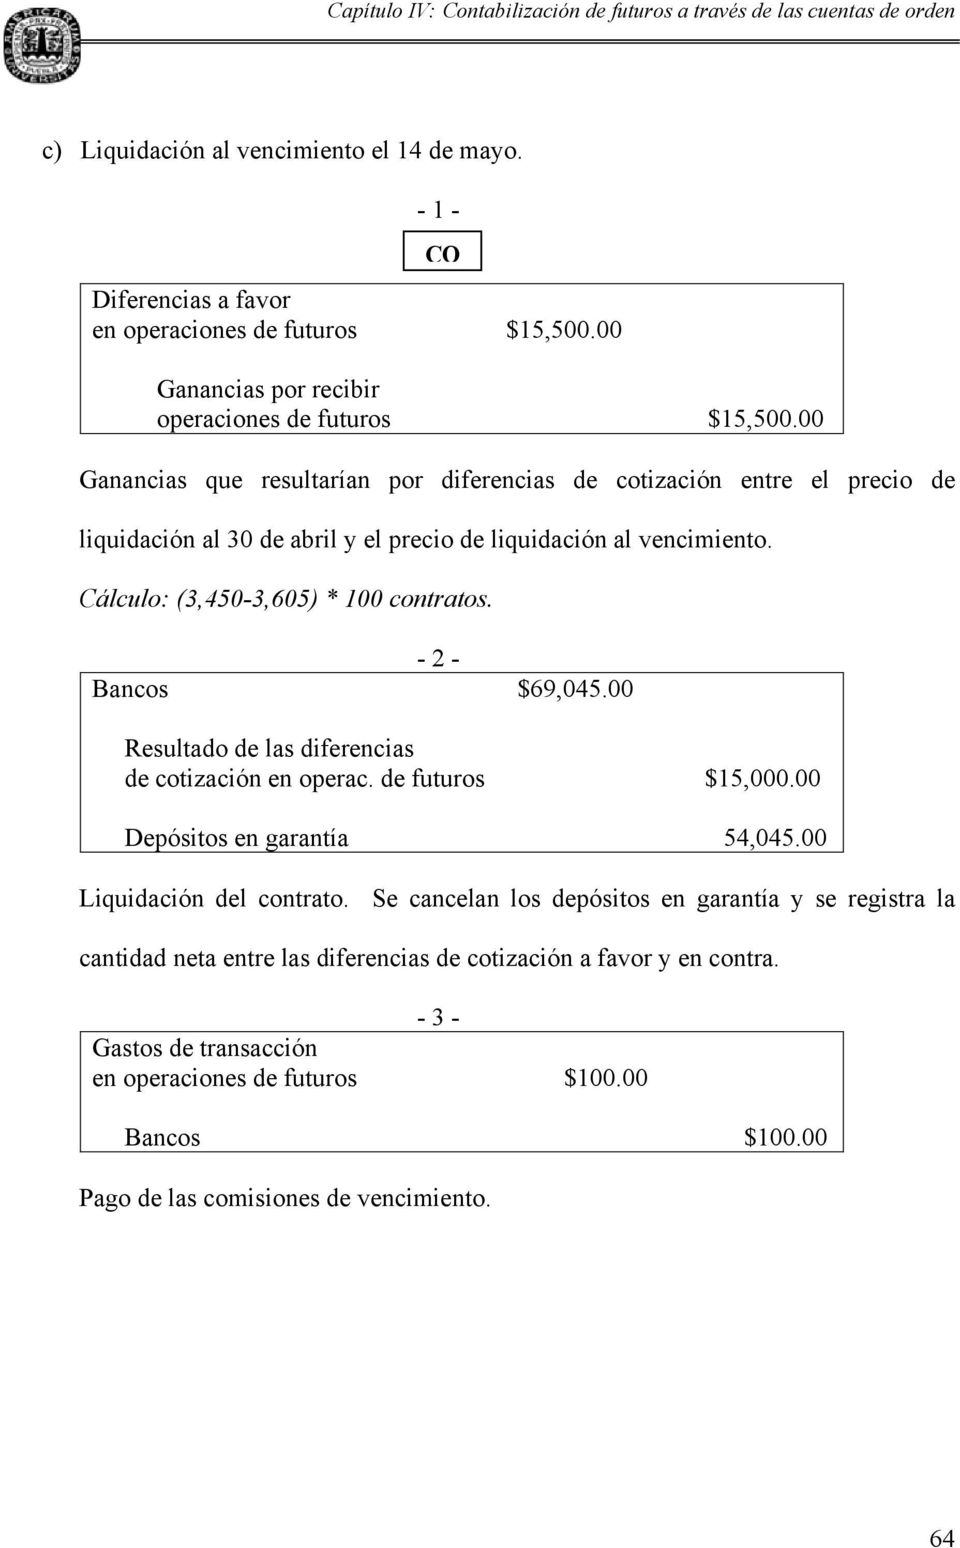 Cálculo: (3,450-3,605) * 100 contratos. - 2 - Bancos $69,045.00 Resultado de las diferencias de cotización en operac. de futuros $15,000.00 Depósitos en garantía 54,045.